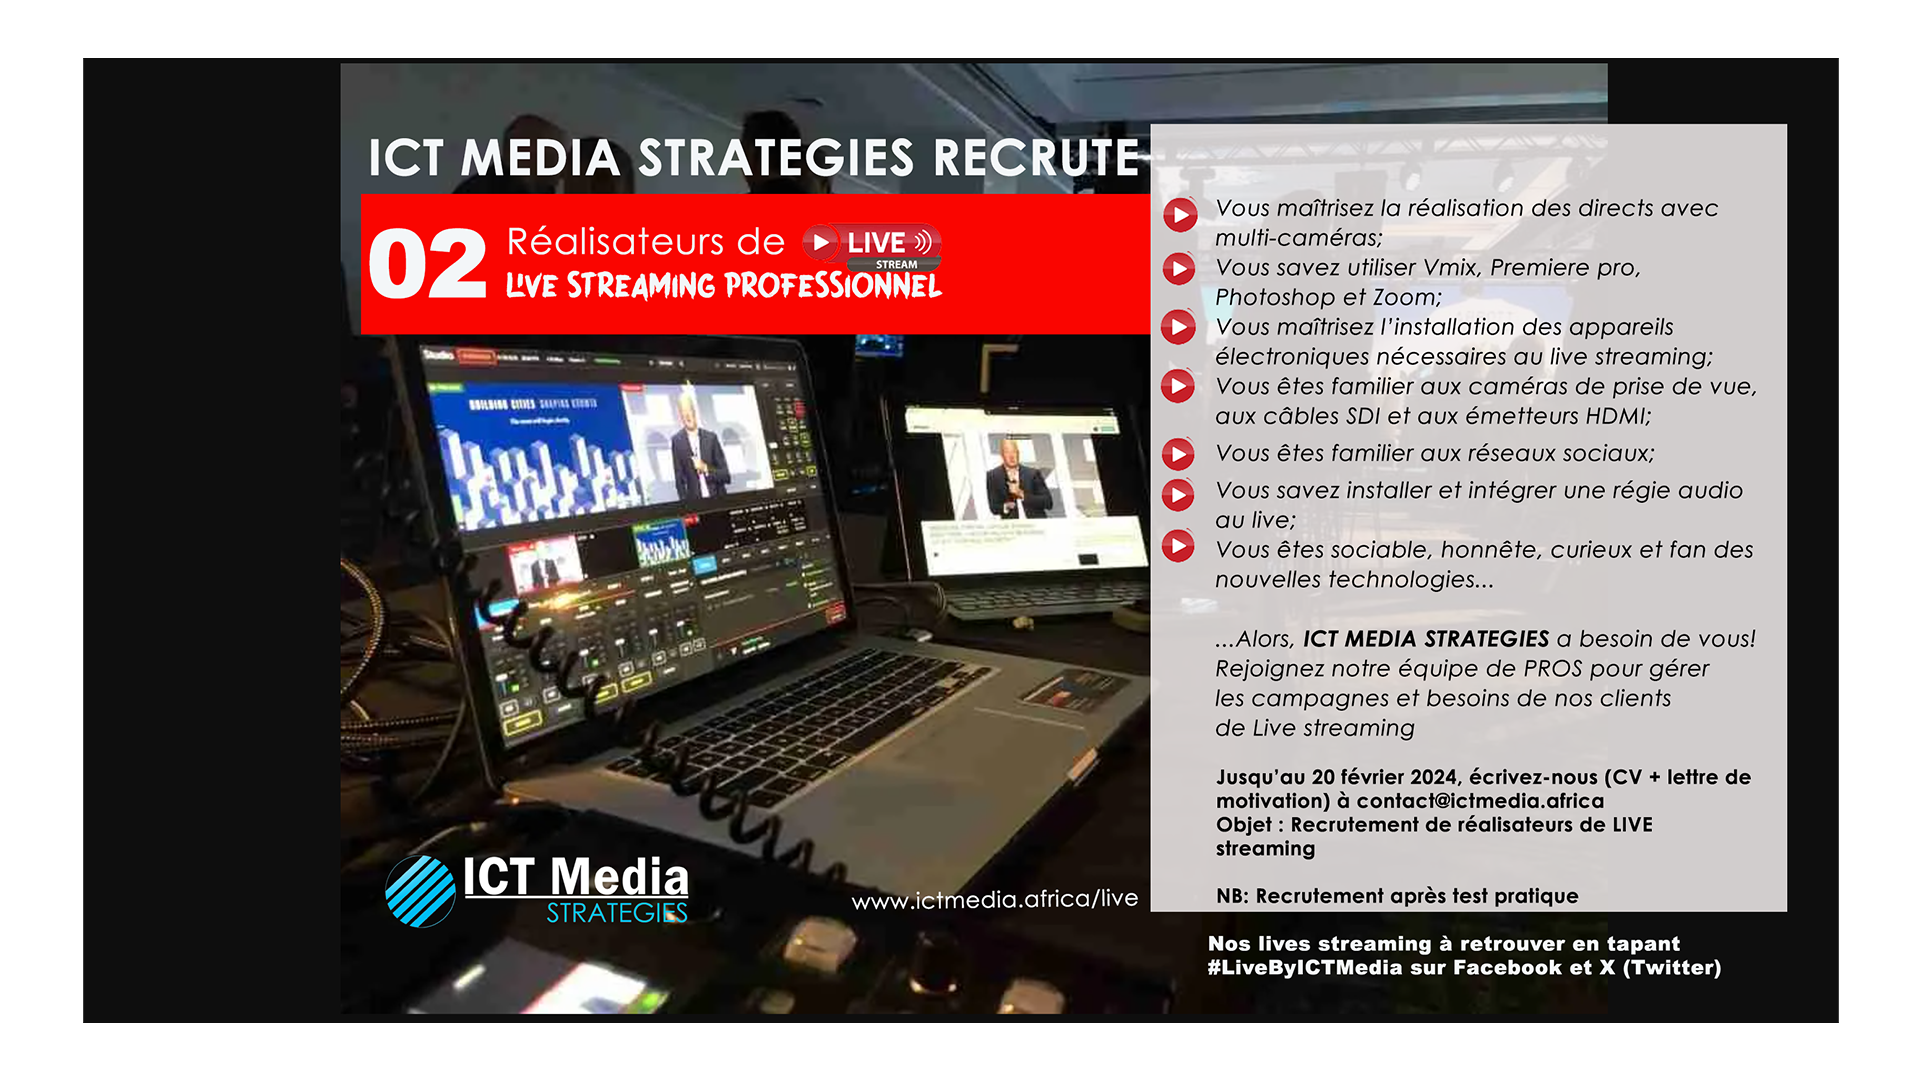 ICT Media STRATEGIES recrute deux professionnels de Live Streaming